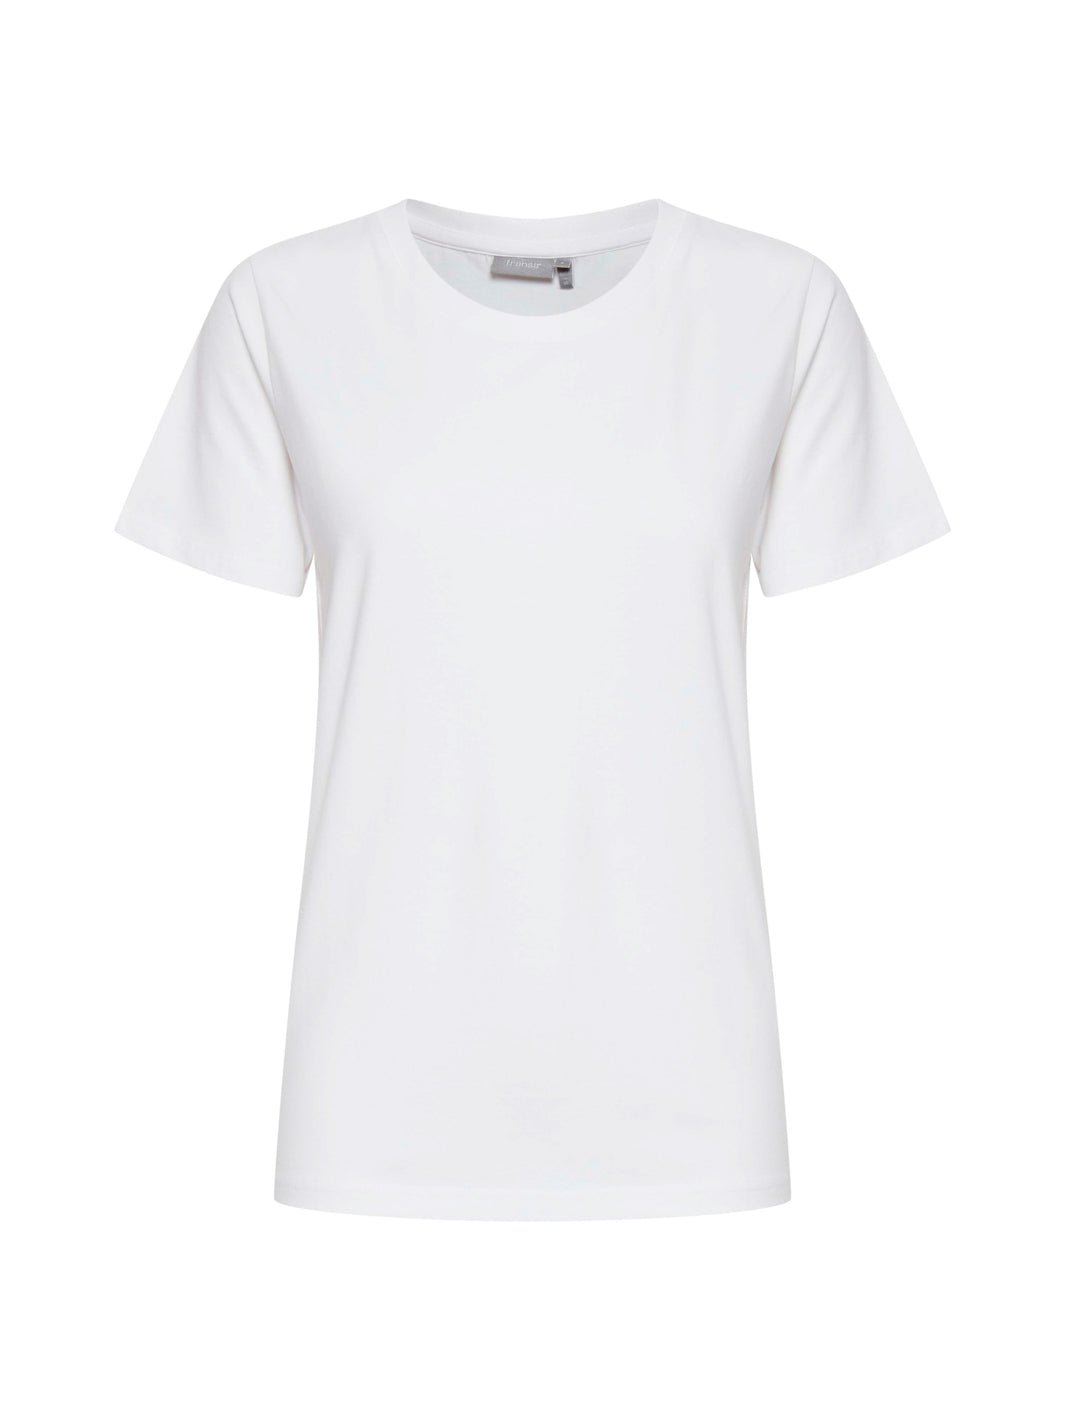 Fransa Zashoulder 1 t-shirt white - Online-Mode